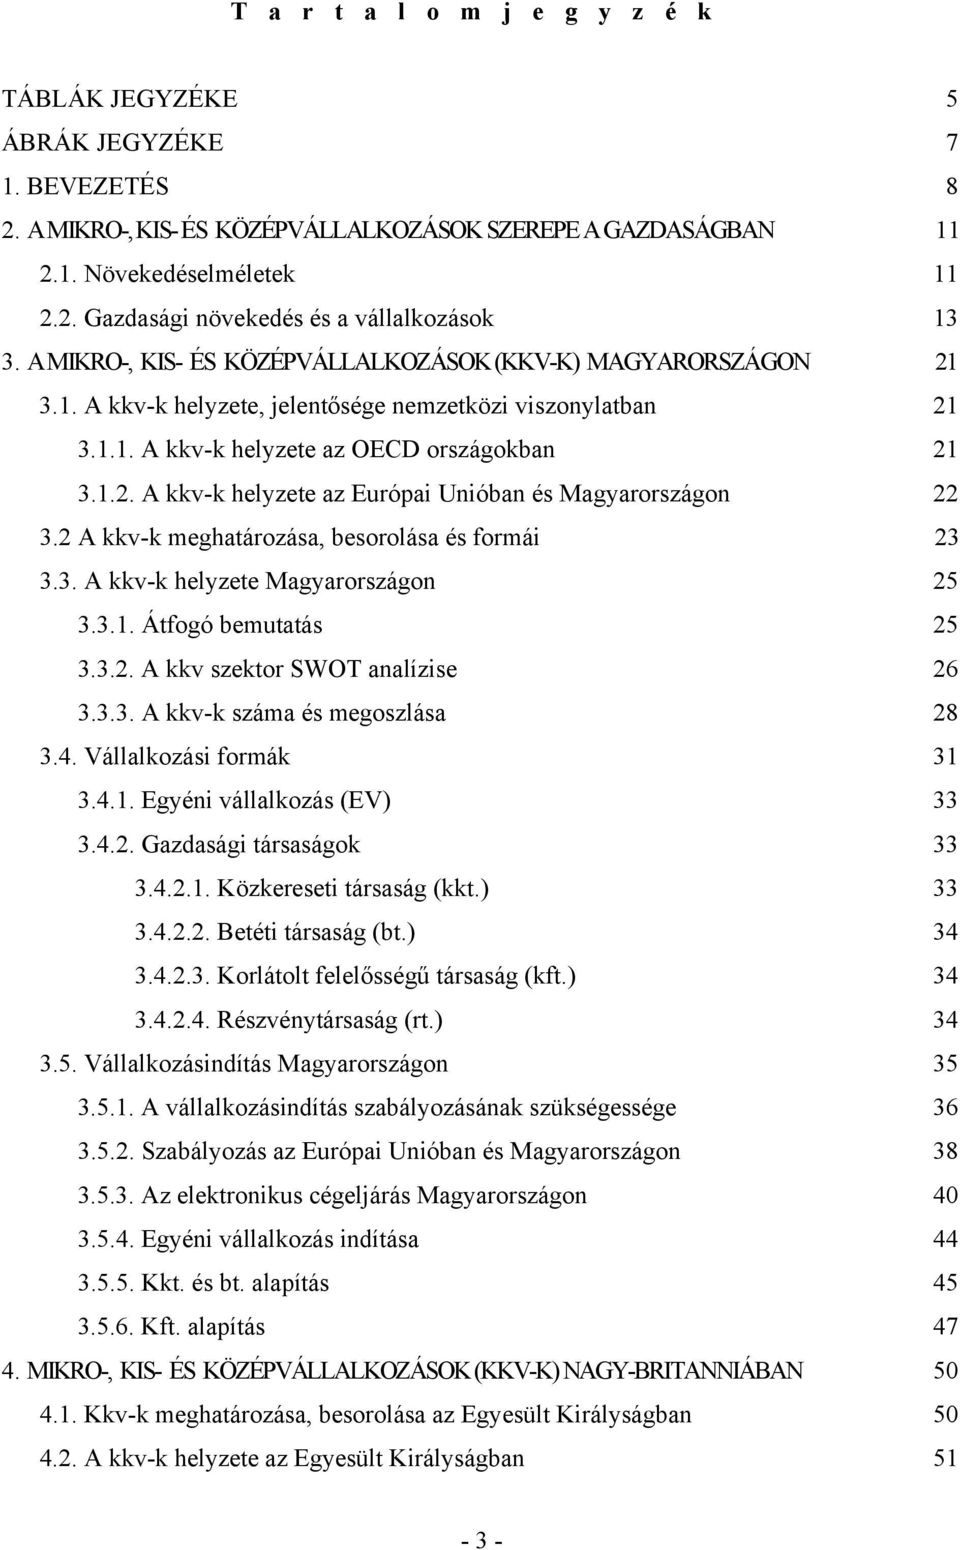 2 A kkv-k meghatározása, besorolása és formái 23 3.3. A kkv-k helyzete Magyarországon 25 3.3.1. Átfogó bemutatás 25 3.3.2. A kkv szektor SWOT analízise 26 3.3.3. A kkv-k száma és megoszlása 28 3.4.